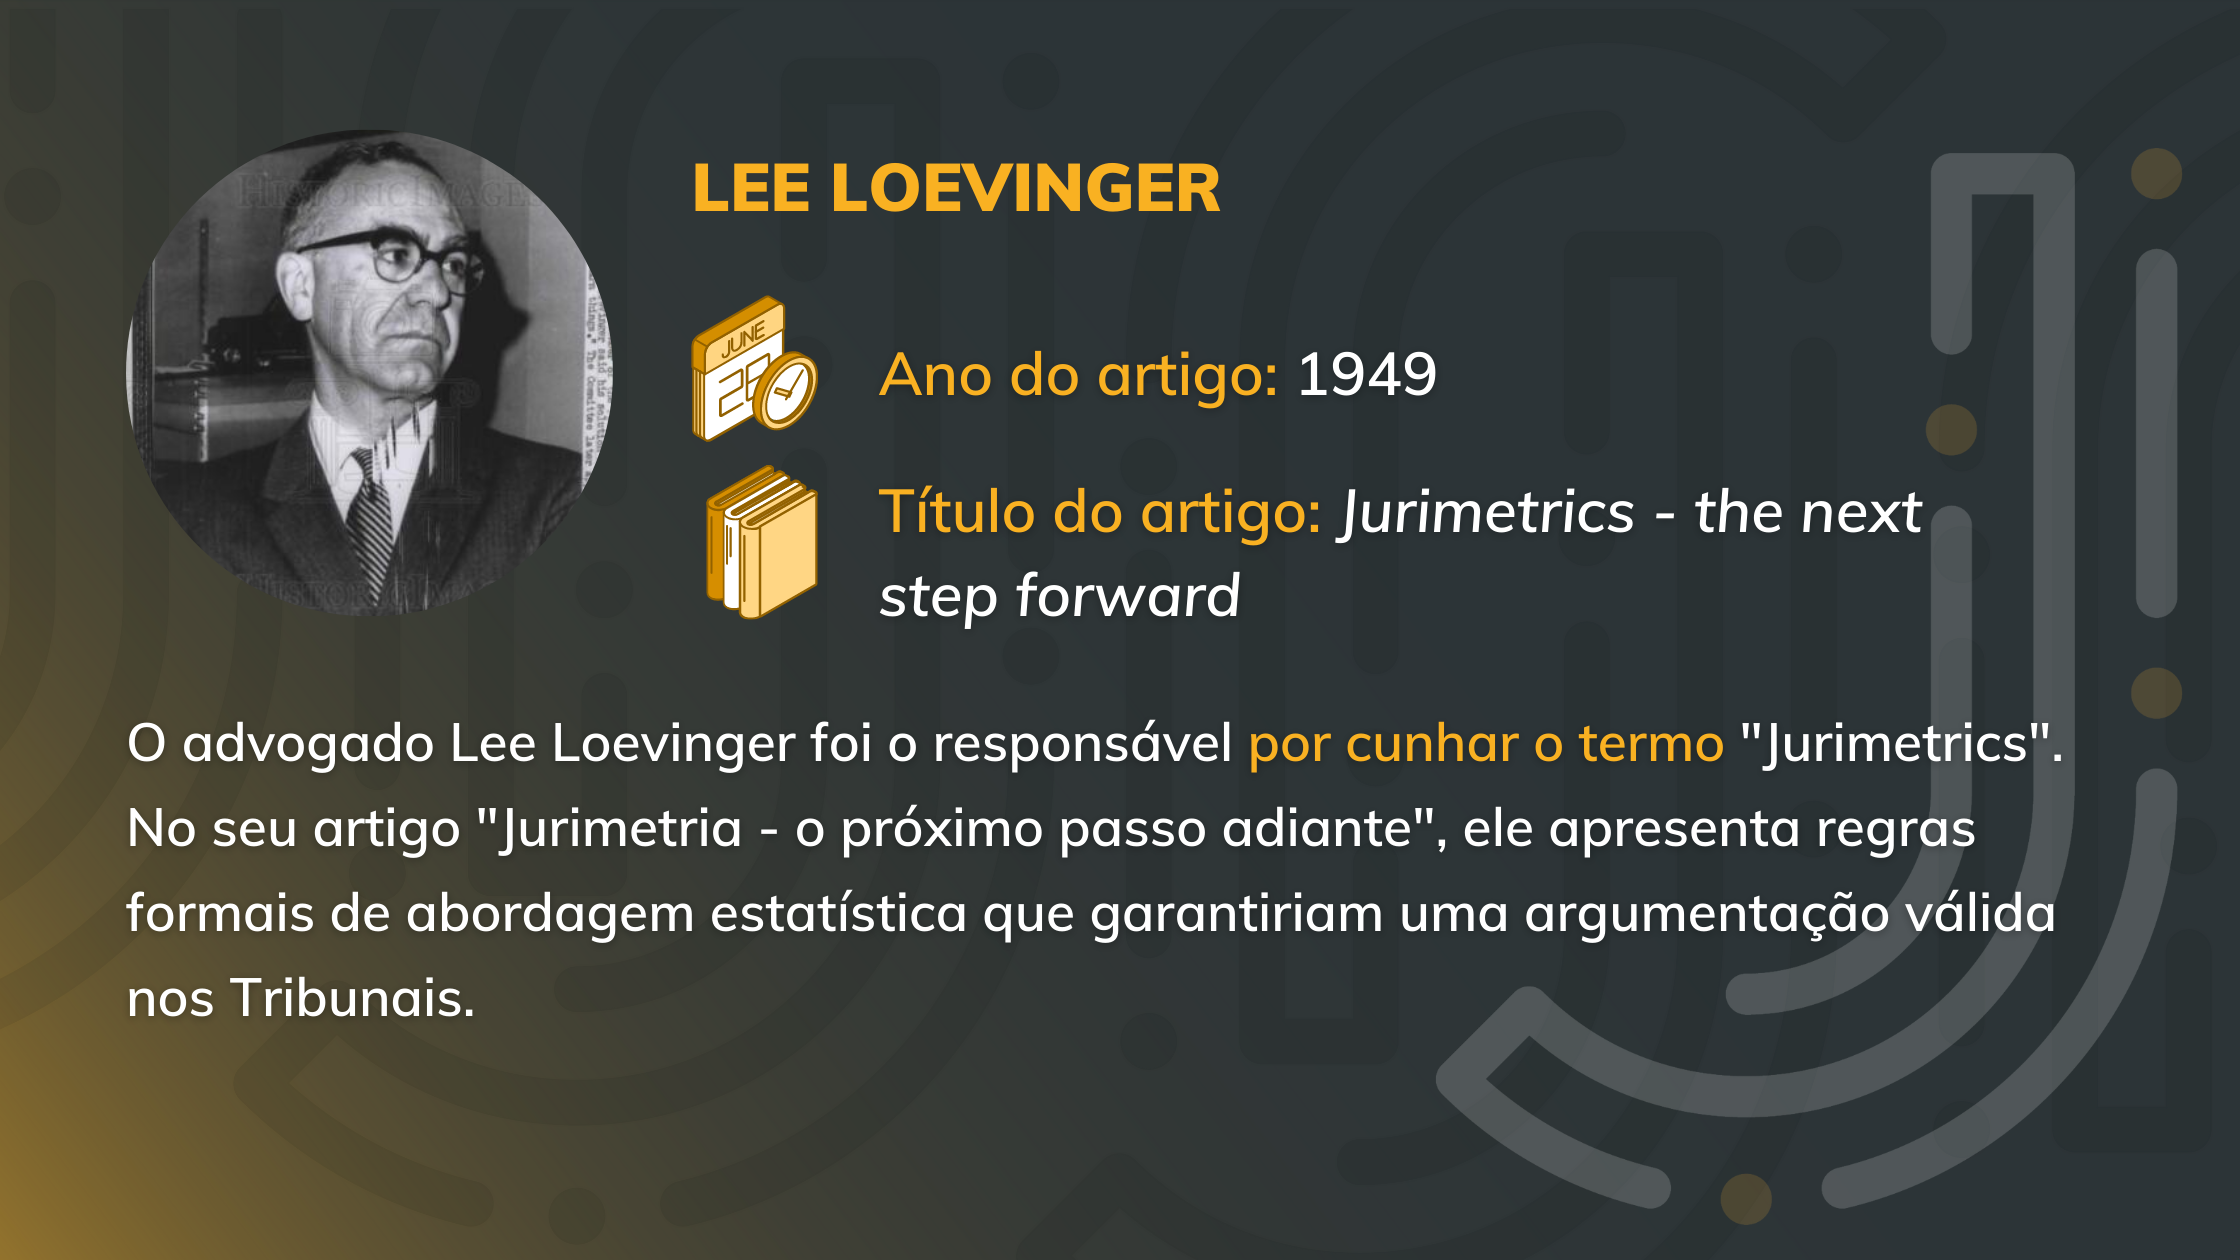 Lee Loevinger e a Jurimetria